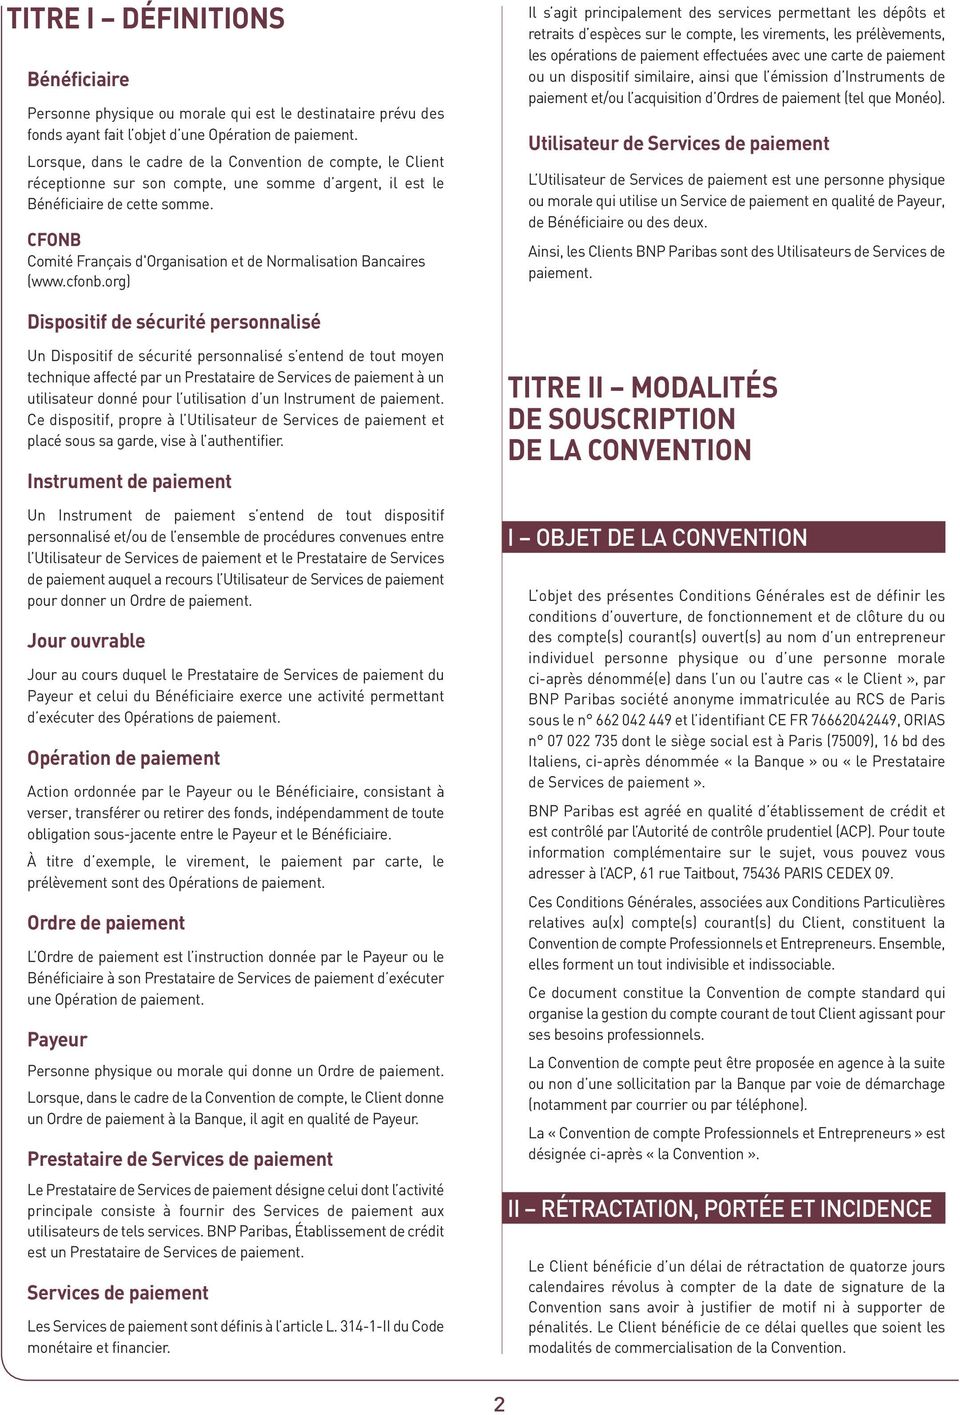 CFONB Comité Français d'organisation et de Normalisation Bancaires (www.cfonb.